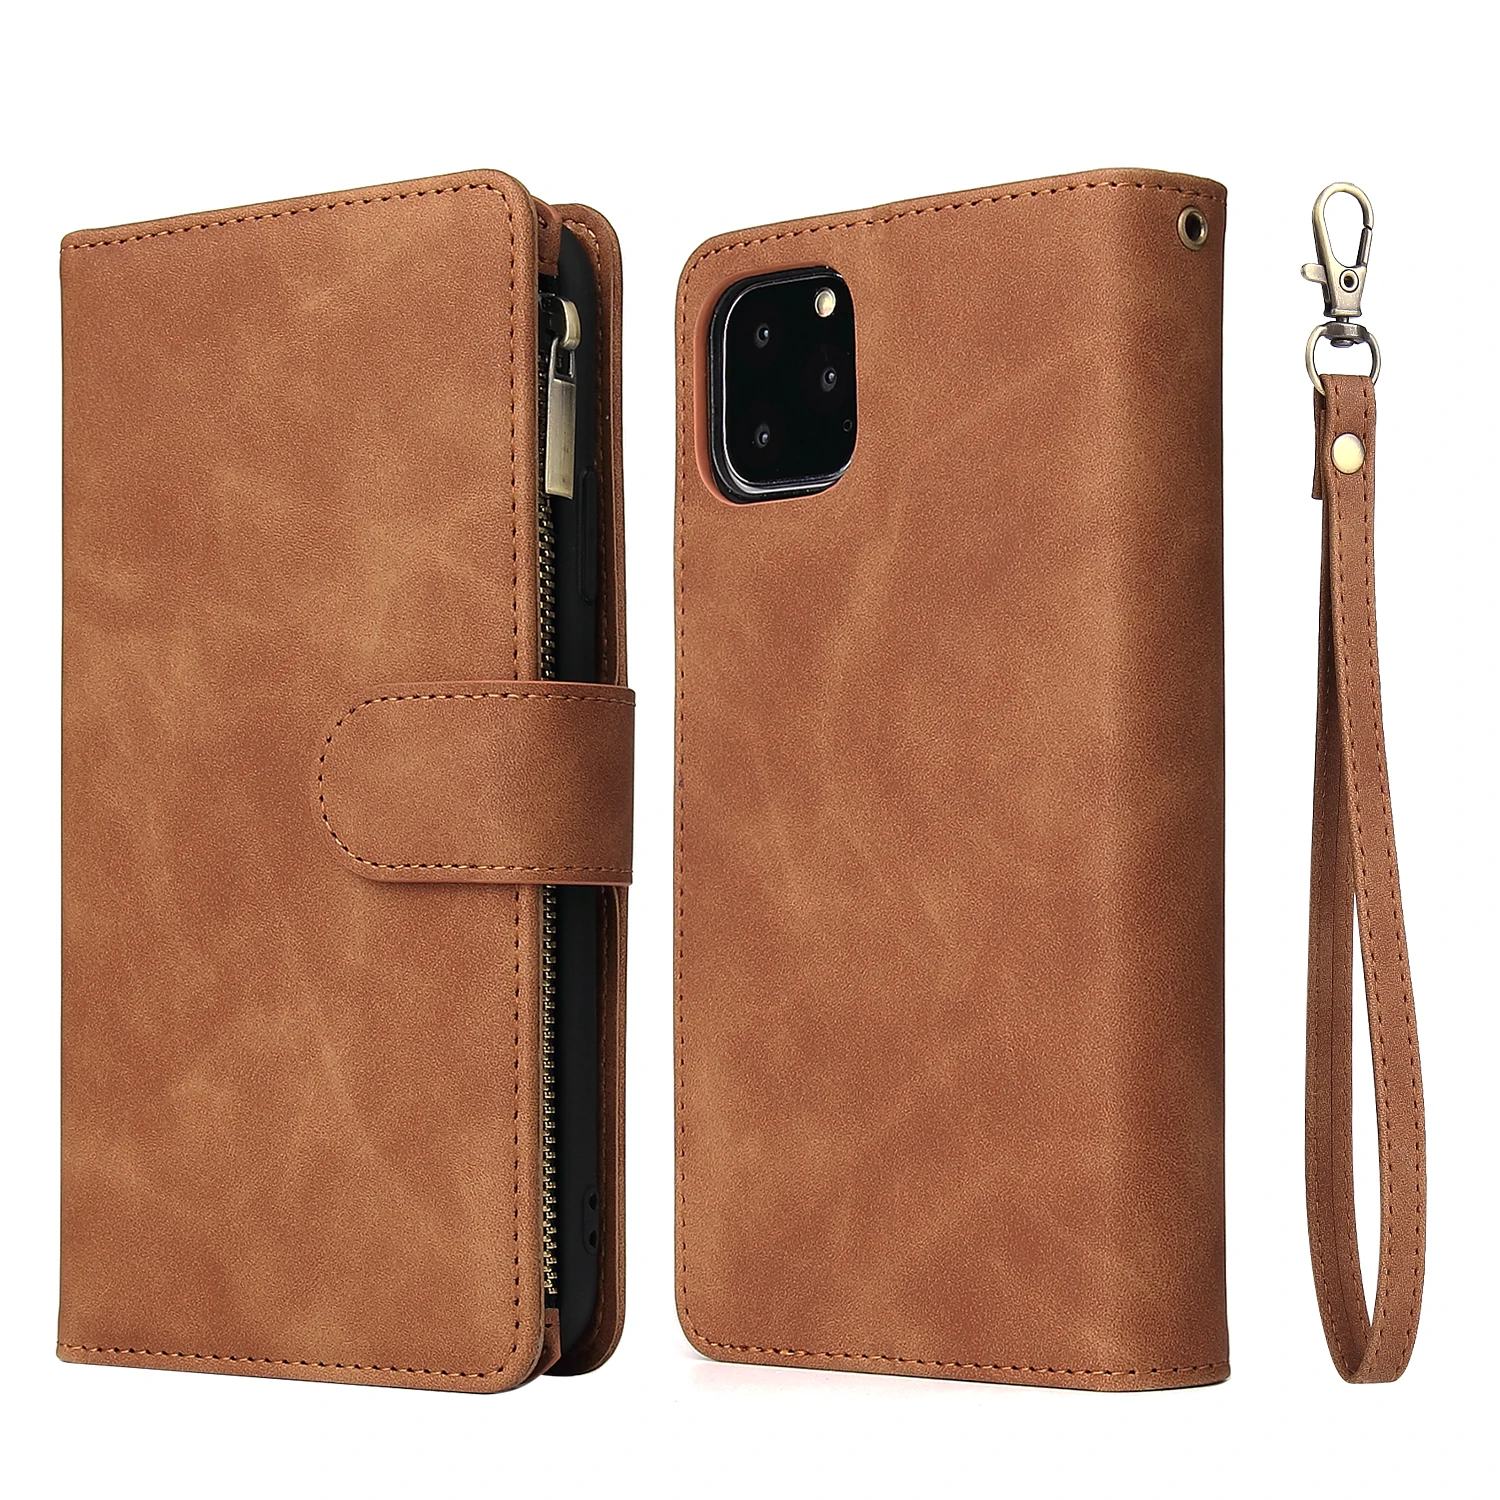 Роскошный кожаный магнитный флип-чехол для телефона для Iphone Xr 11 pro Xs Max X, кошелек для карт, подставка для Iphone 8, 7, 6, 6s Plus